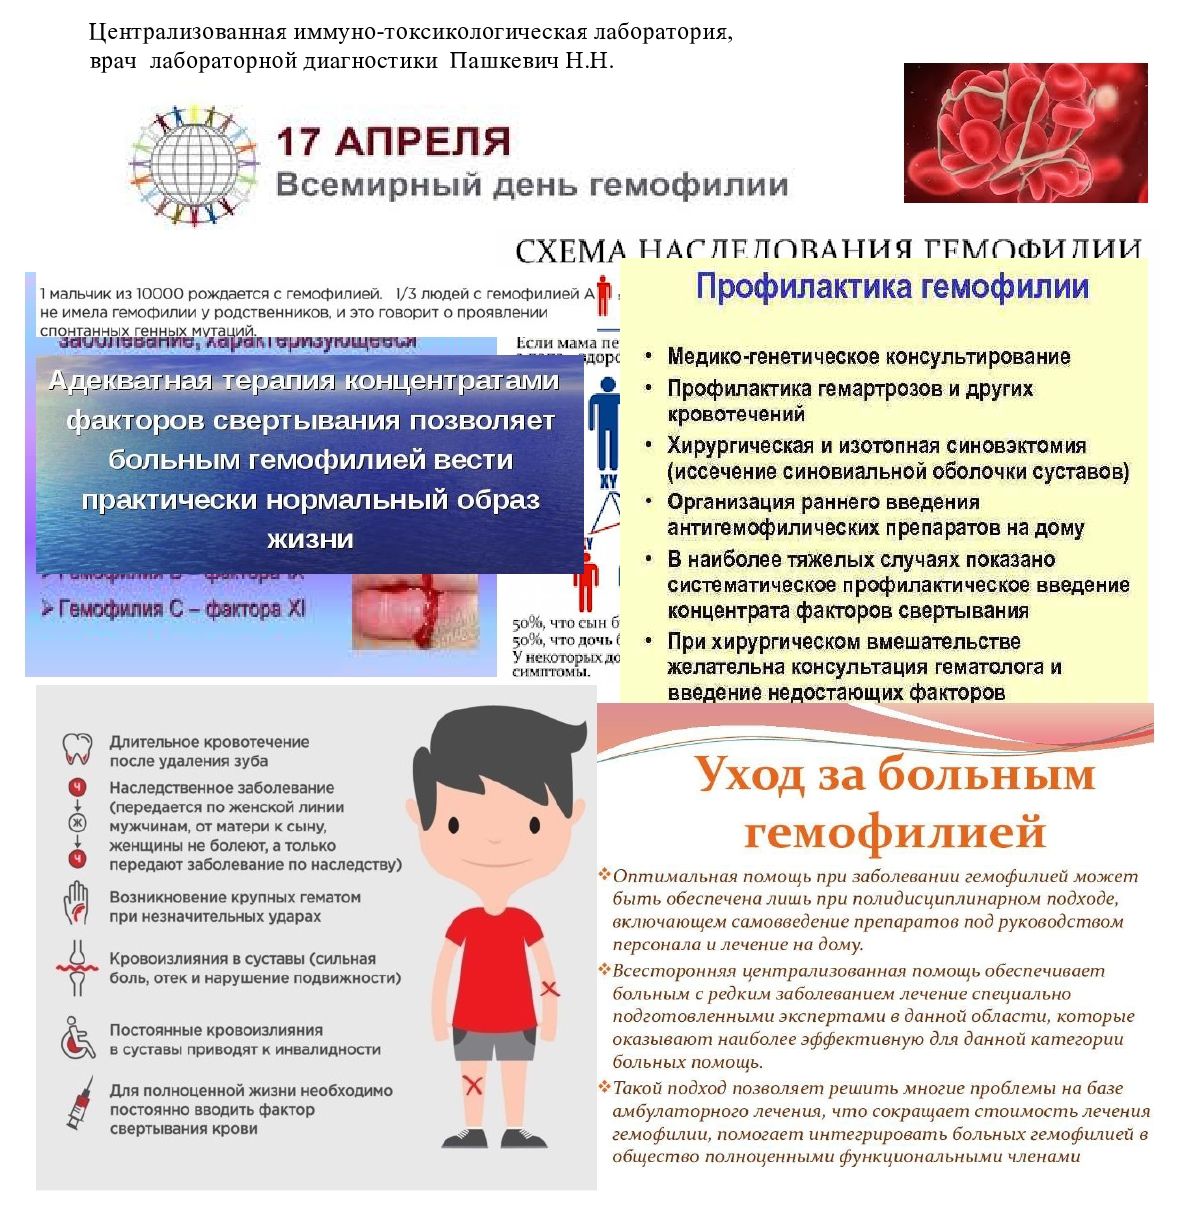 Разговор 17 апреля. Всемирный день гемофилии. Гемофилия памятка. Всемирный день борьбы с гемофилией. Профилактика гемофилии памятка.